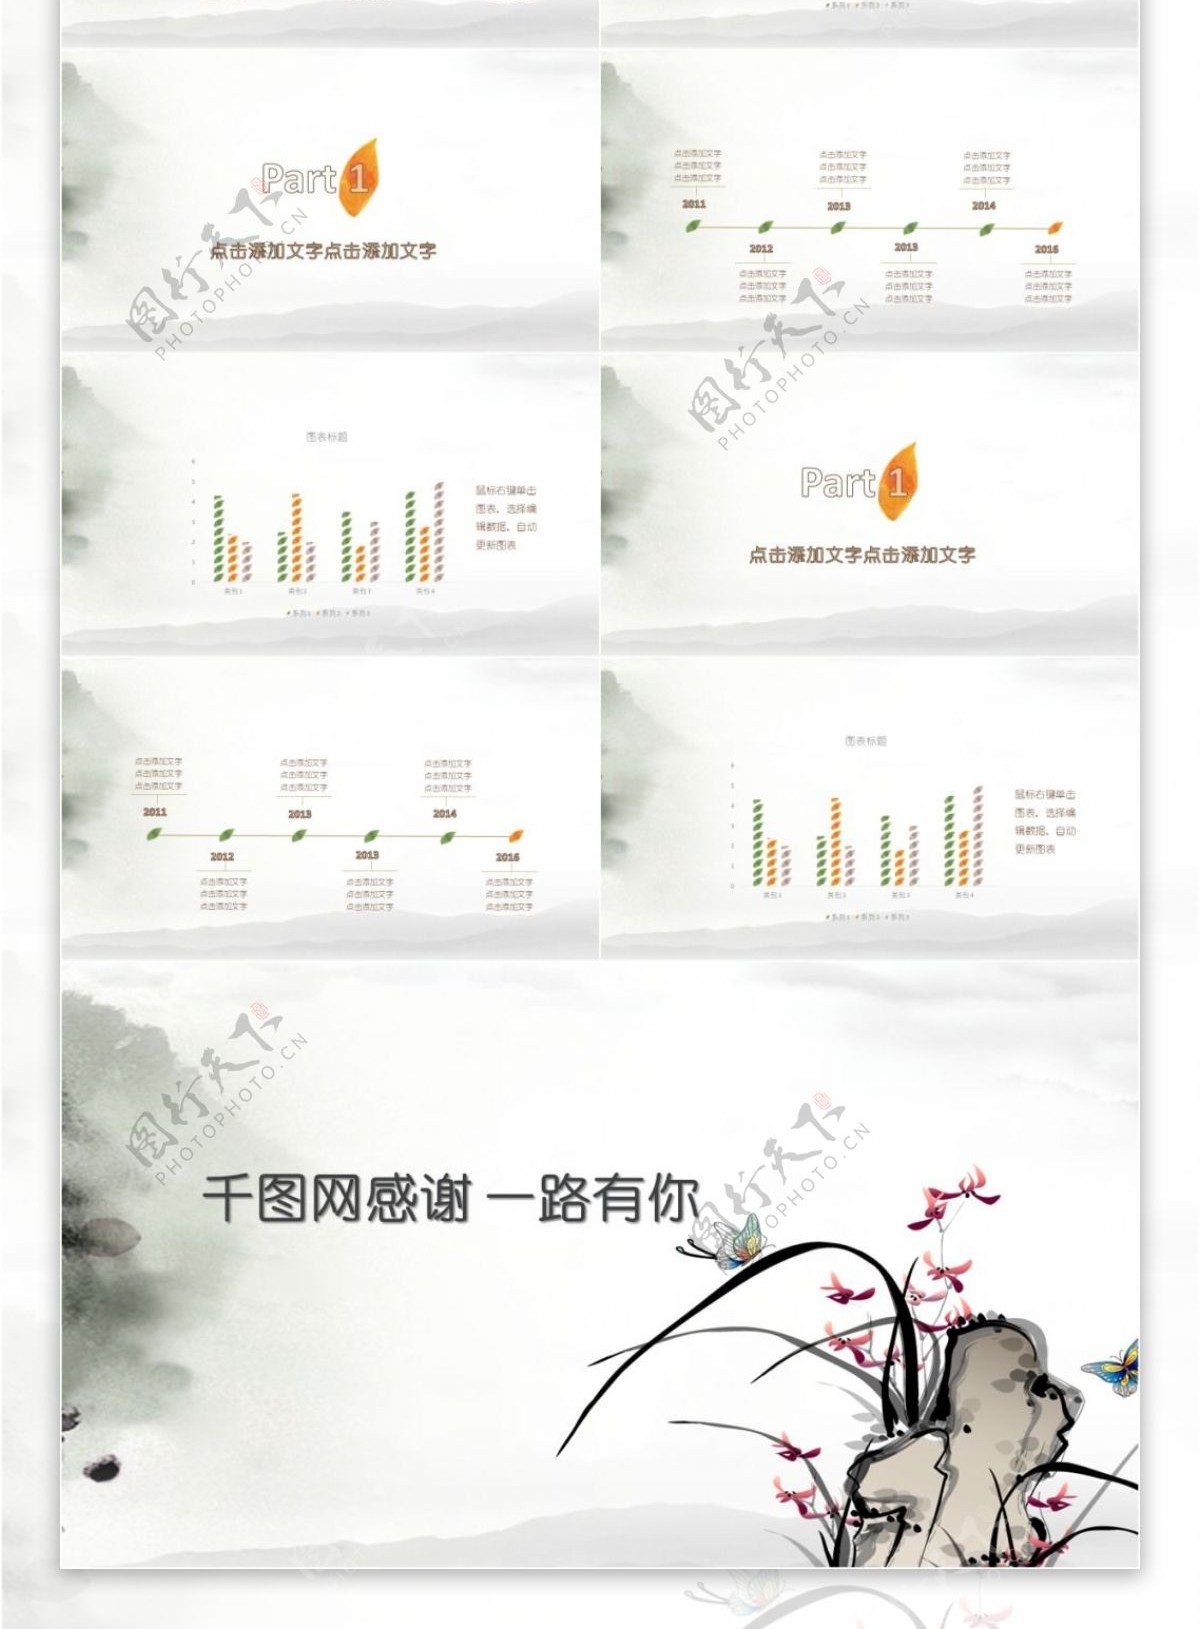 水墨彩蝶计划总结汇报中国风PPT模板设计